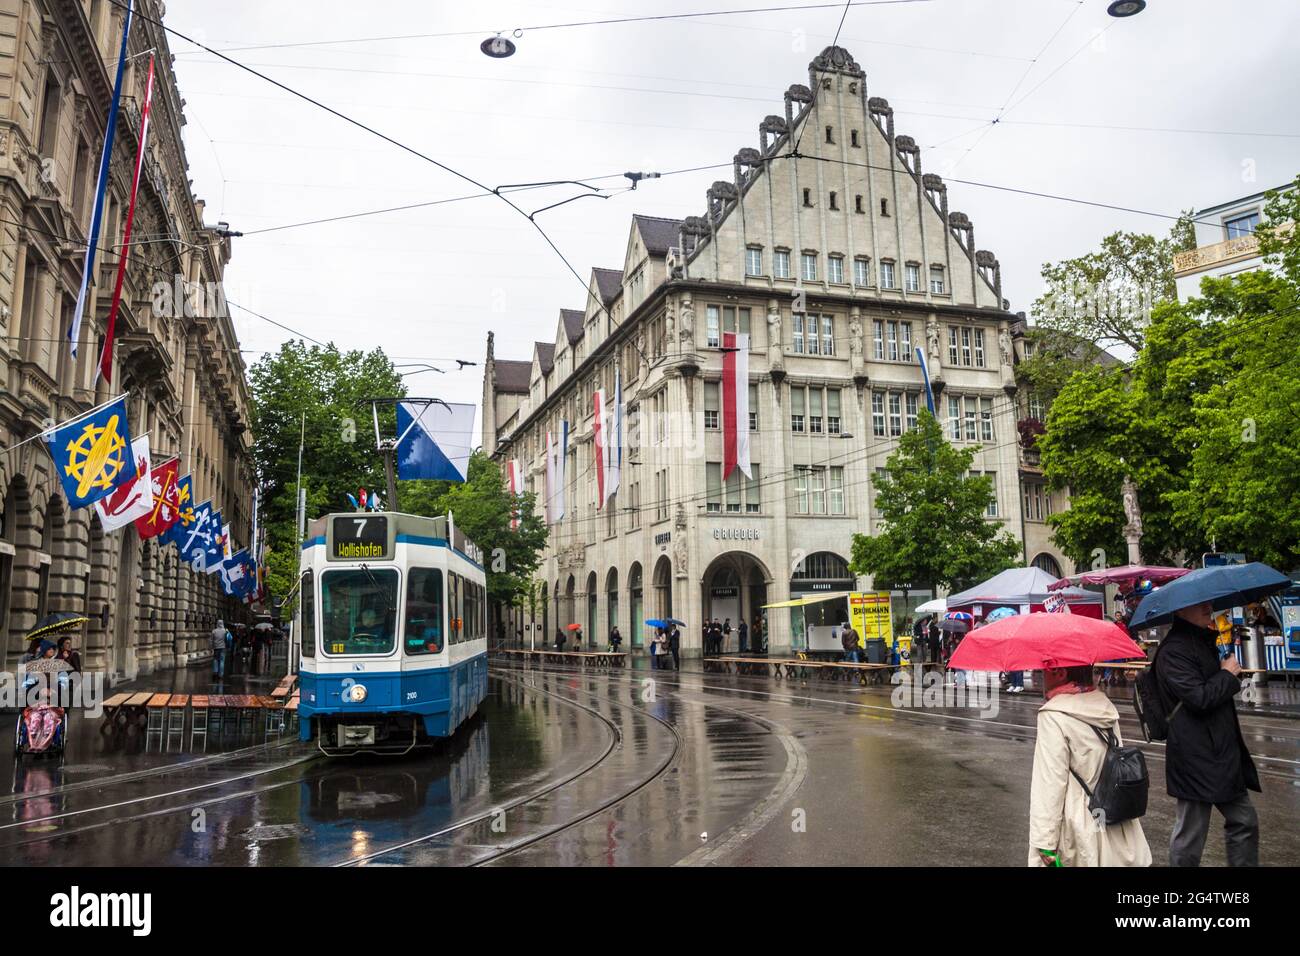 ZURICH - AVRIL 28 : vue sur une rue Bahnhofstrasse le 28 avril 2014 à Zurich, Suisse. Zurich est la plus grande ville de Suisse et la capitale Banque D'Images